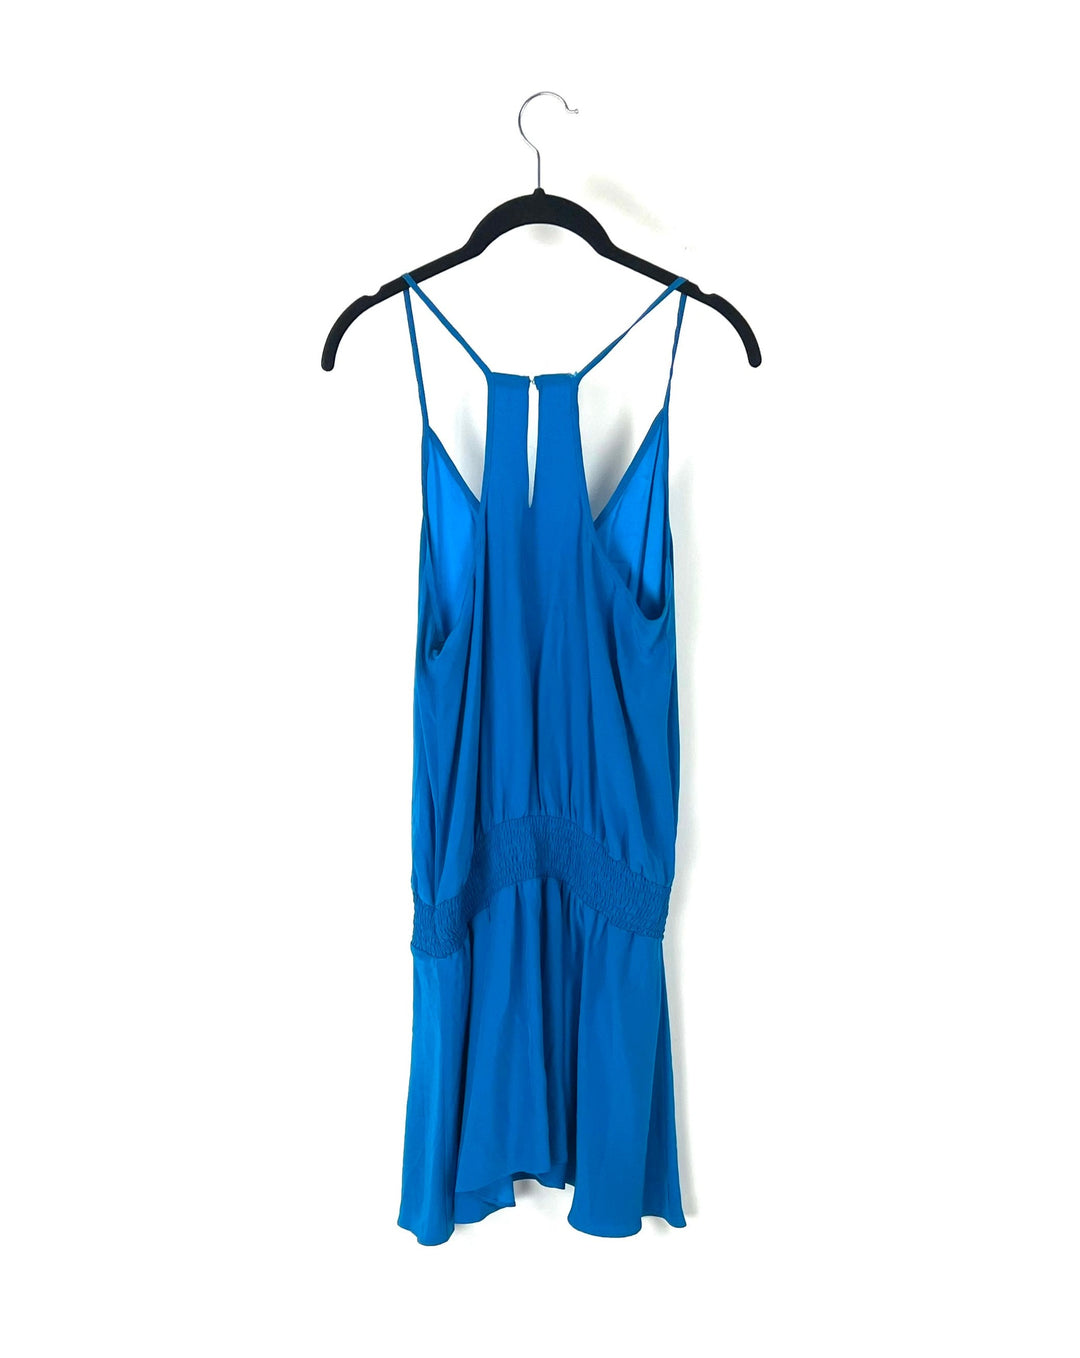 Blue Ruffle Dress - Size 4/6